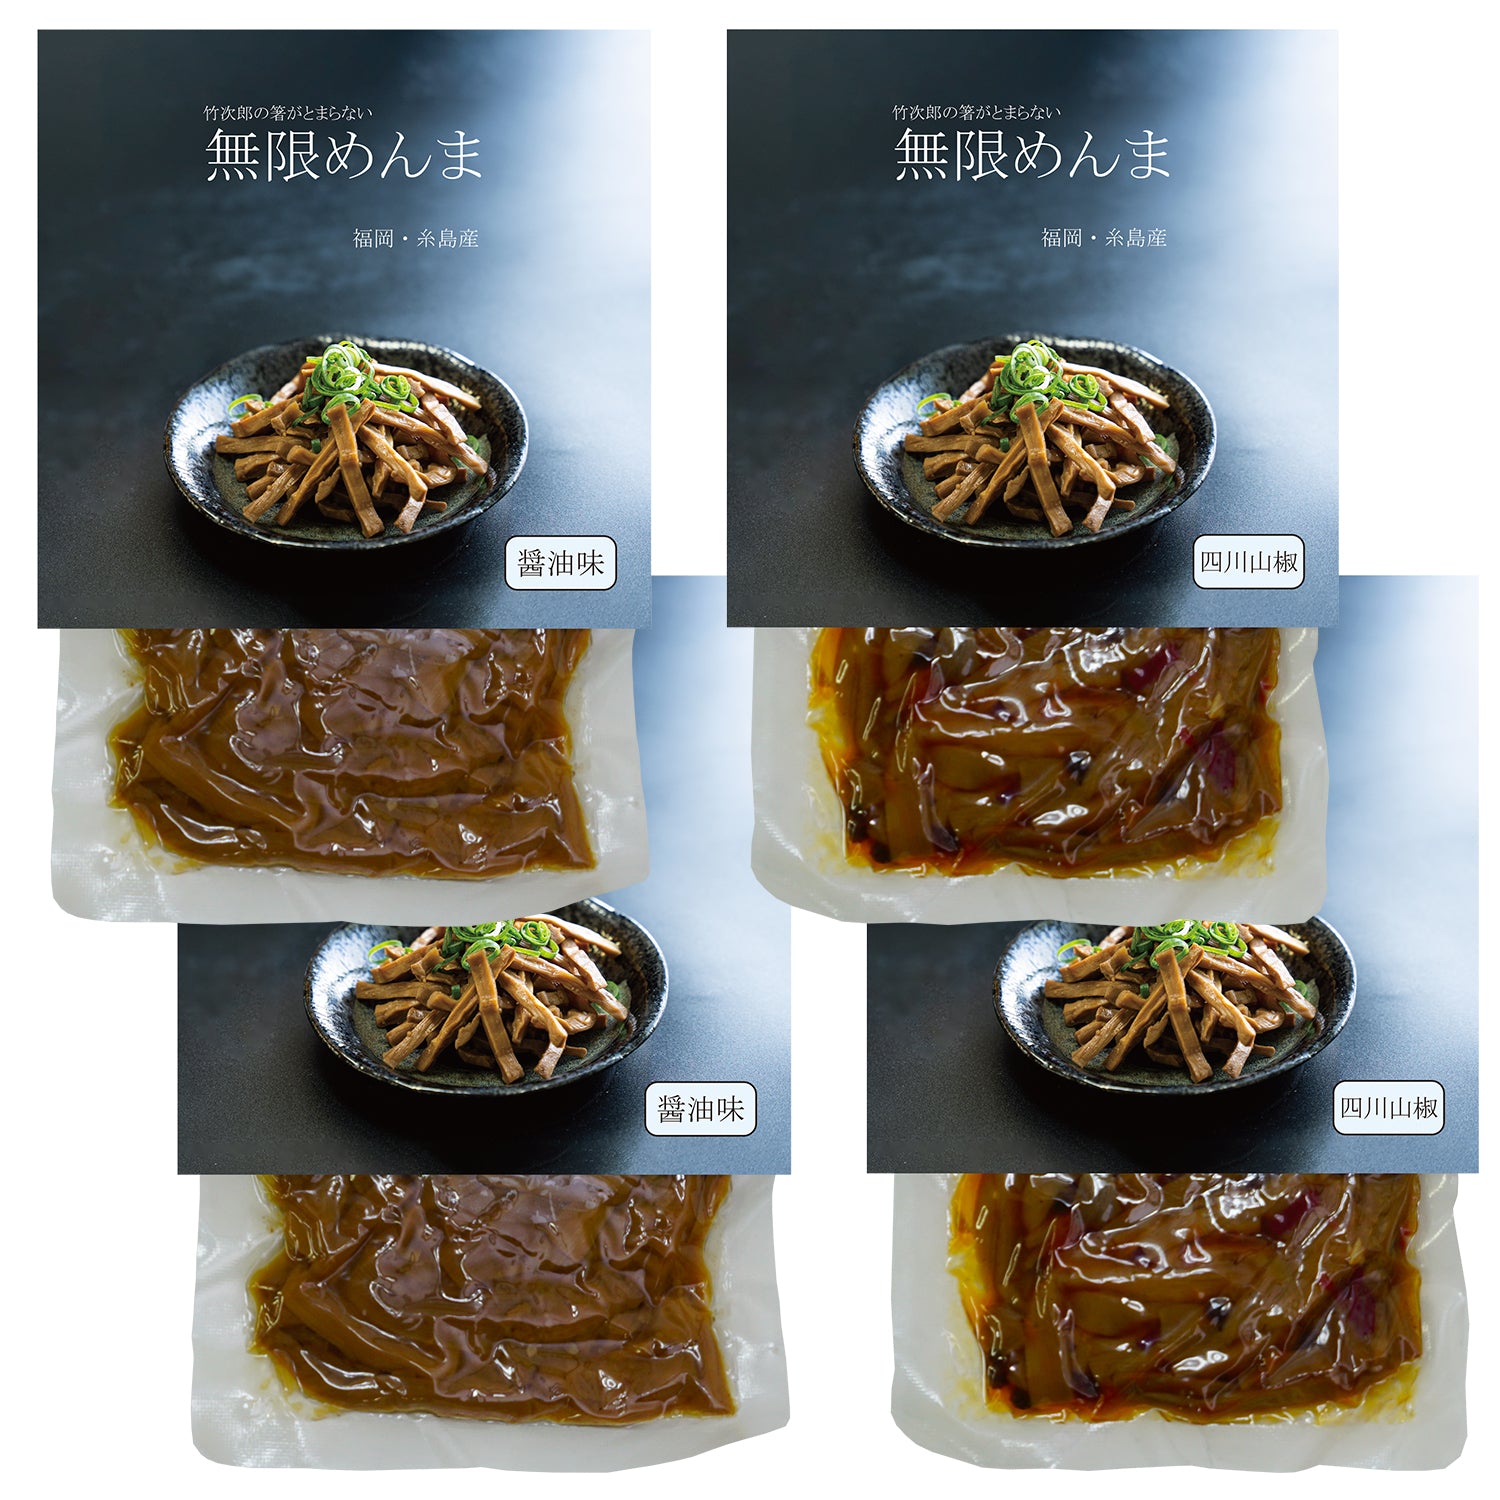 竹次郎 無限めんま -醤油味 2個 / 四川山椒味 2個セット